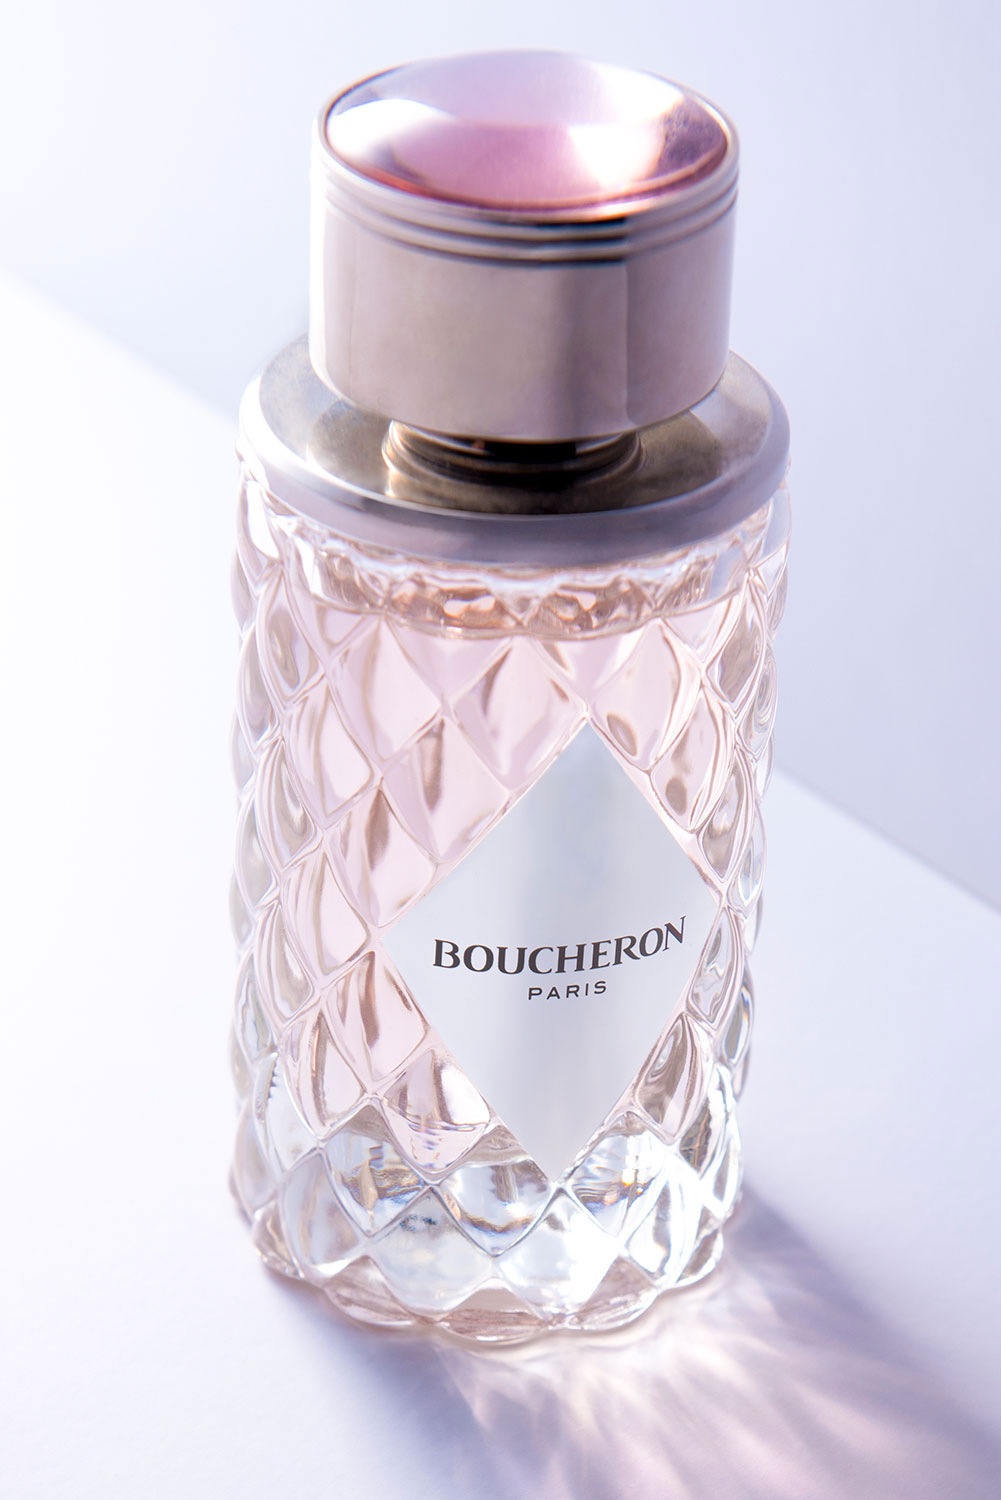 Une bouteille de parfum Boucheron Paris lors d'un shooting photo